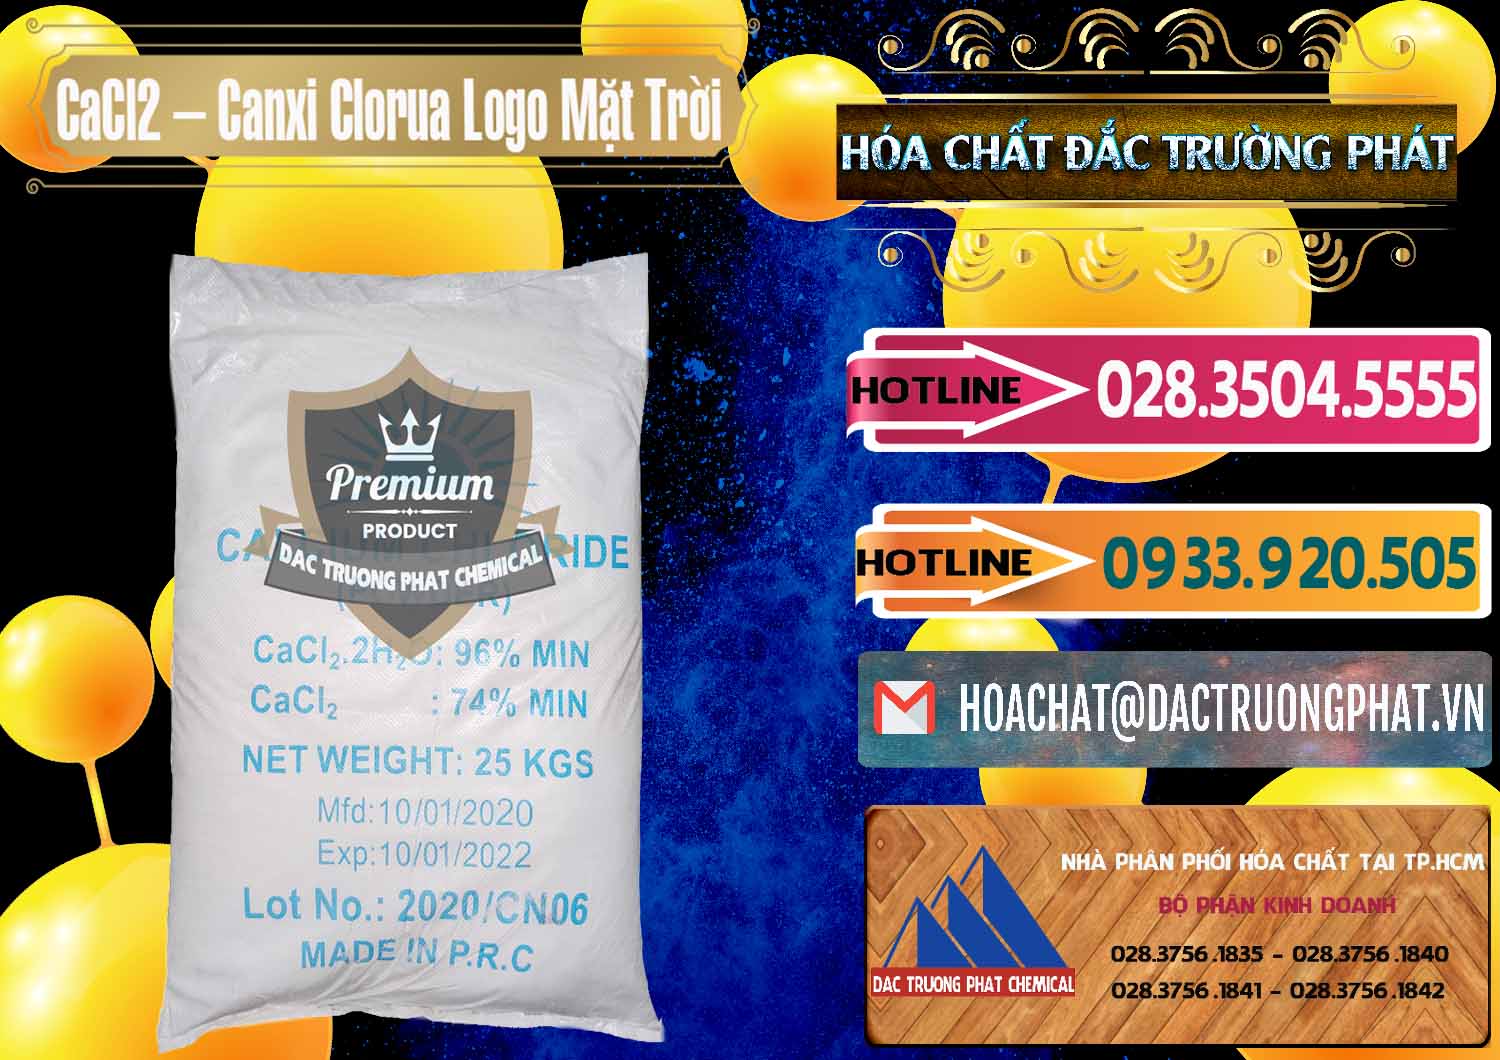 Chuyên kinh doanh và bán CaCl2 – Canxi Clorua 96% Logo Mặt Trời Trung Quốc China - 0041 - Nơi chuyên phân phối ( bán ) hóa chất tại TP.HCM - dactruongphat.vn